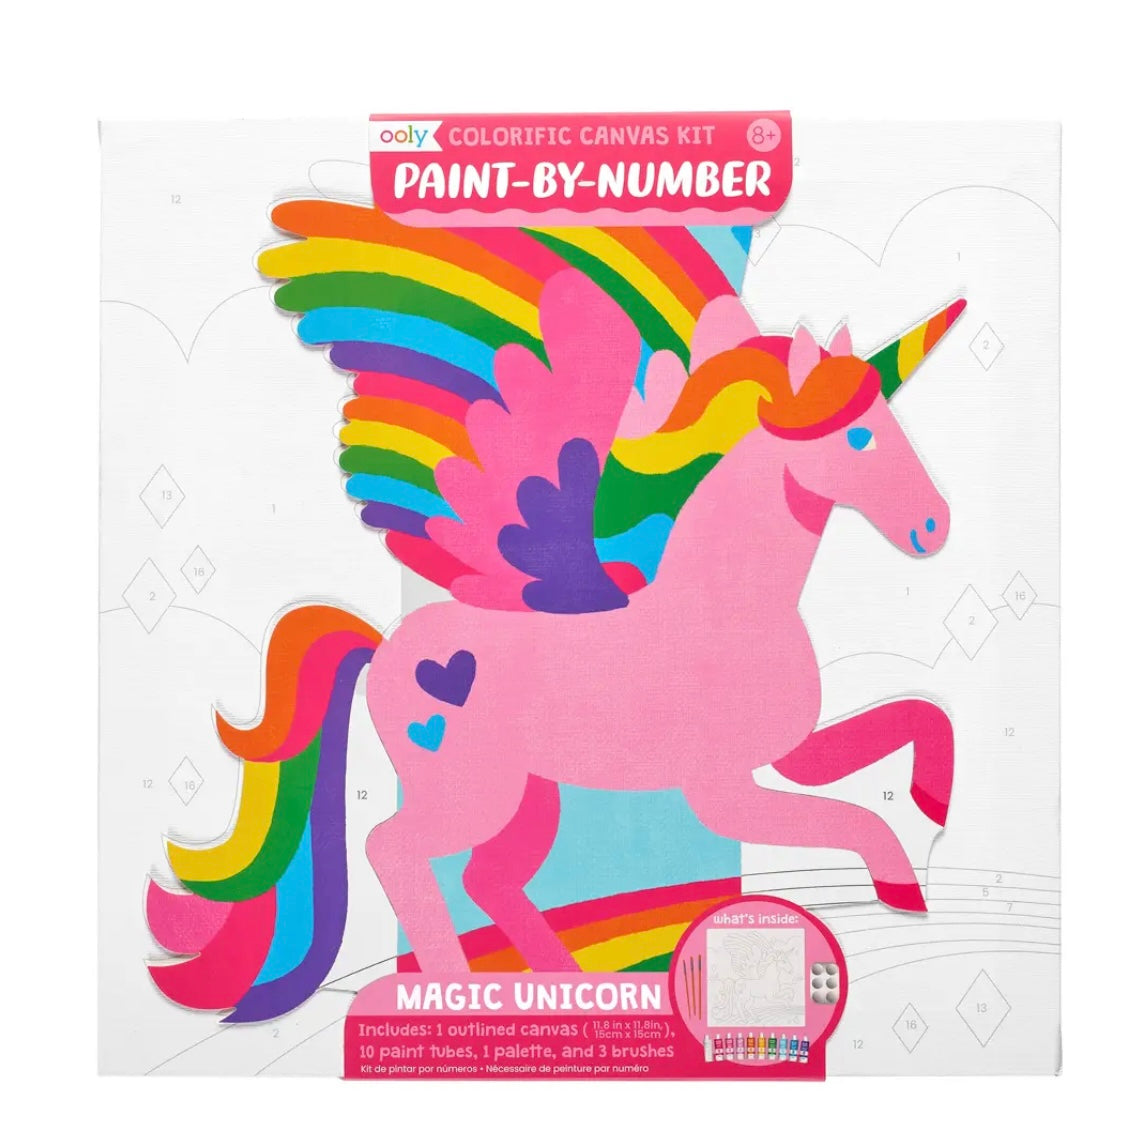 Unicorn Colorific Canvas Paint by Number Kit